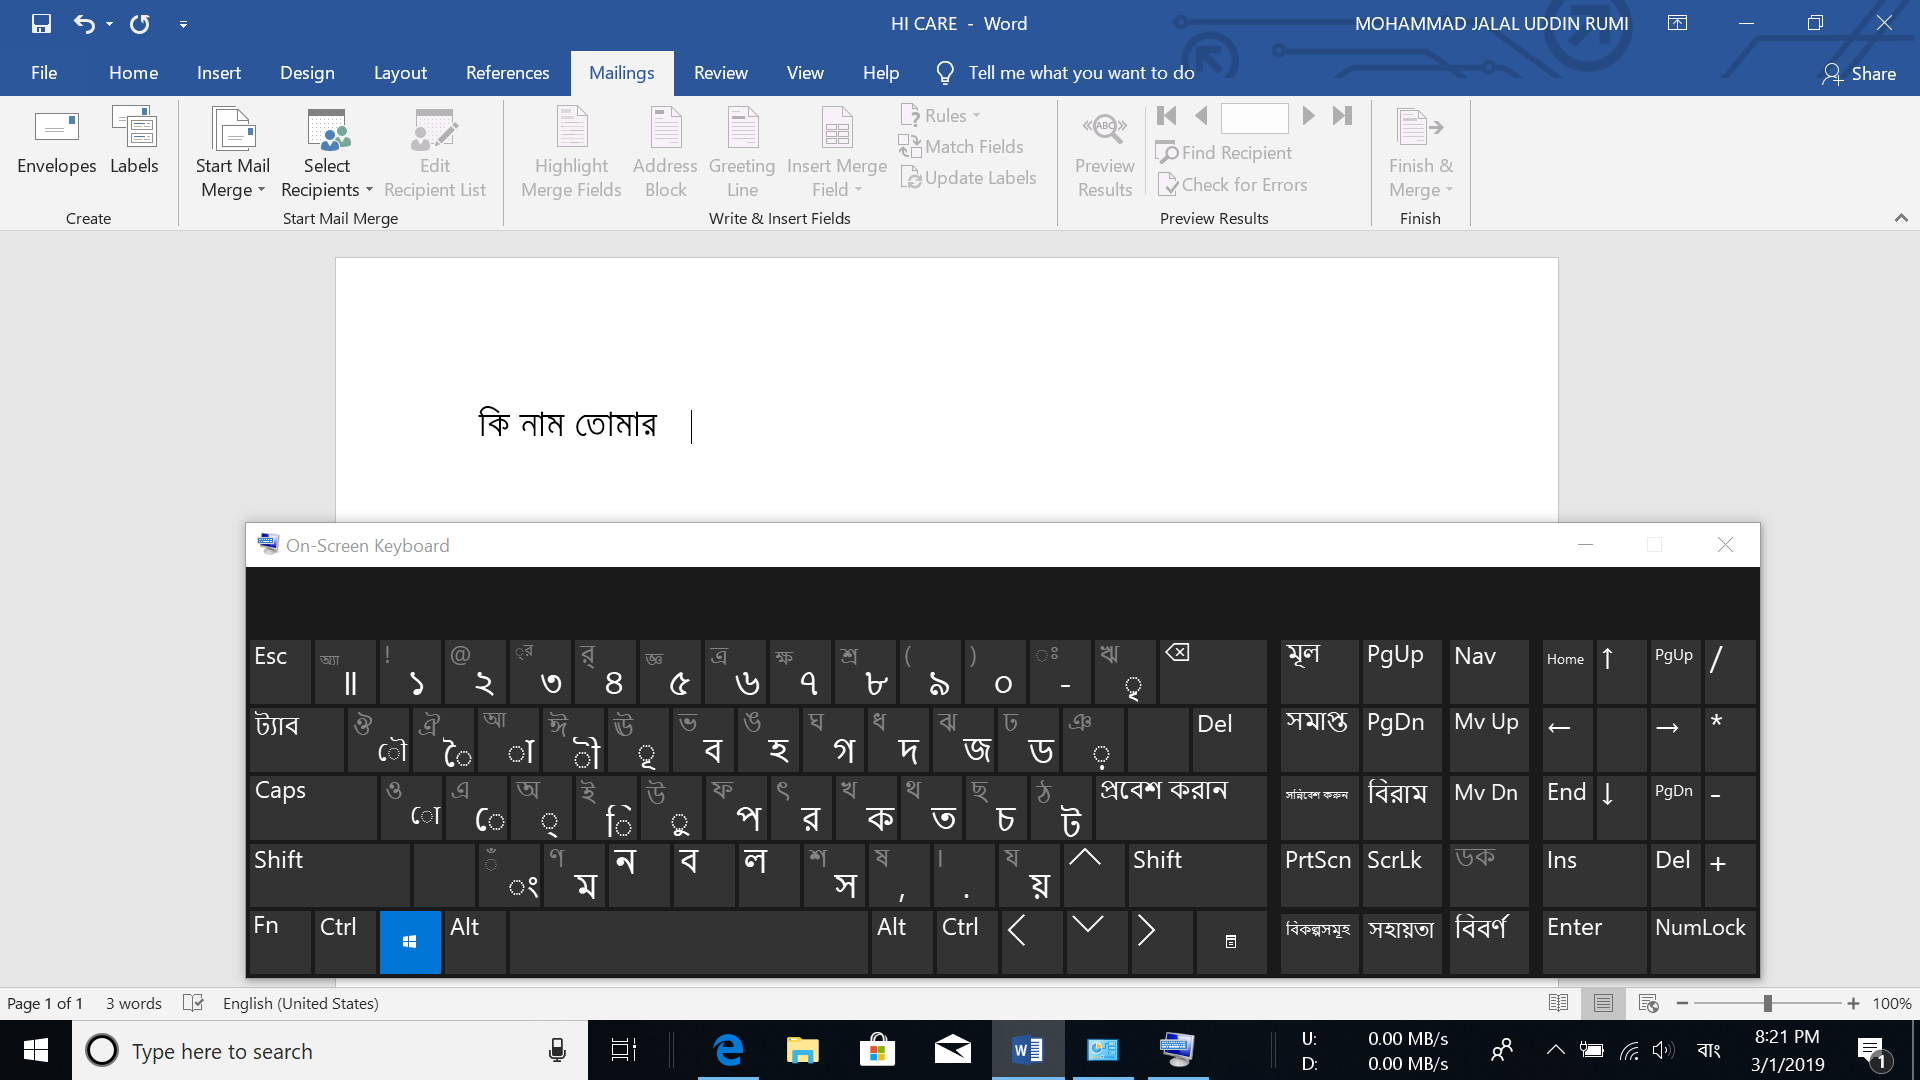 Windows 10 Typing Indic Language [Bangla] 1528b99f-7757-439d-9785-6d0f36eebd50?upload=true.png